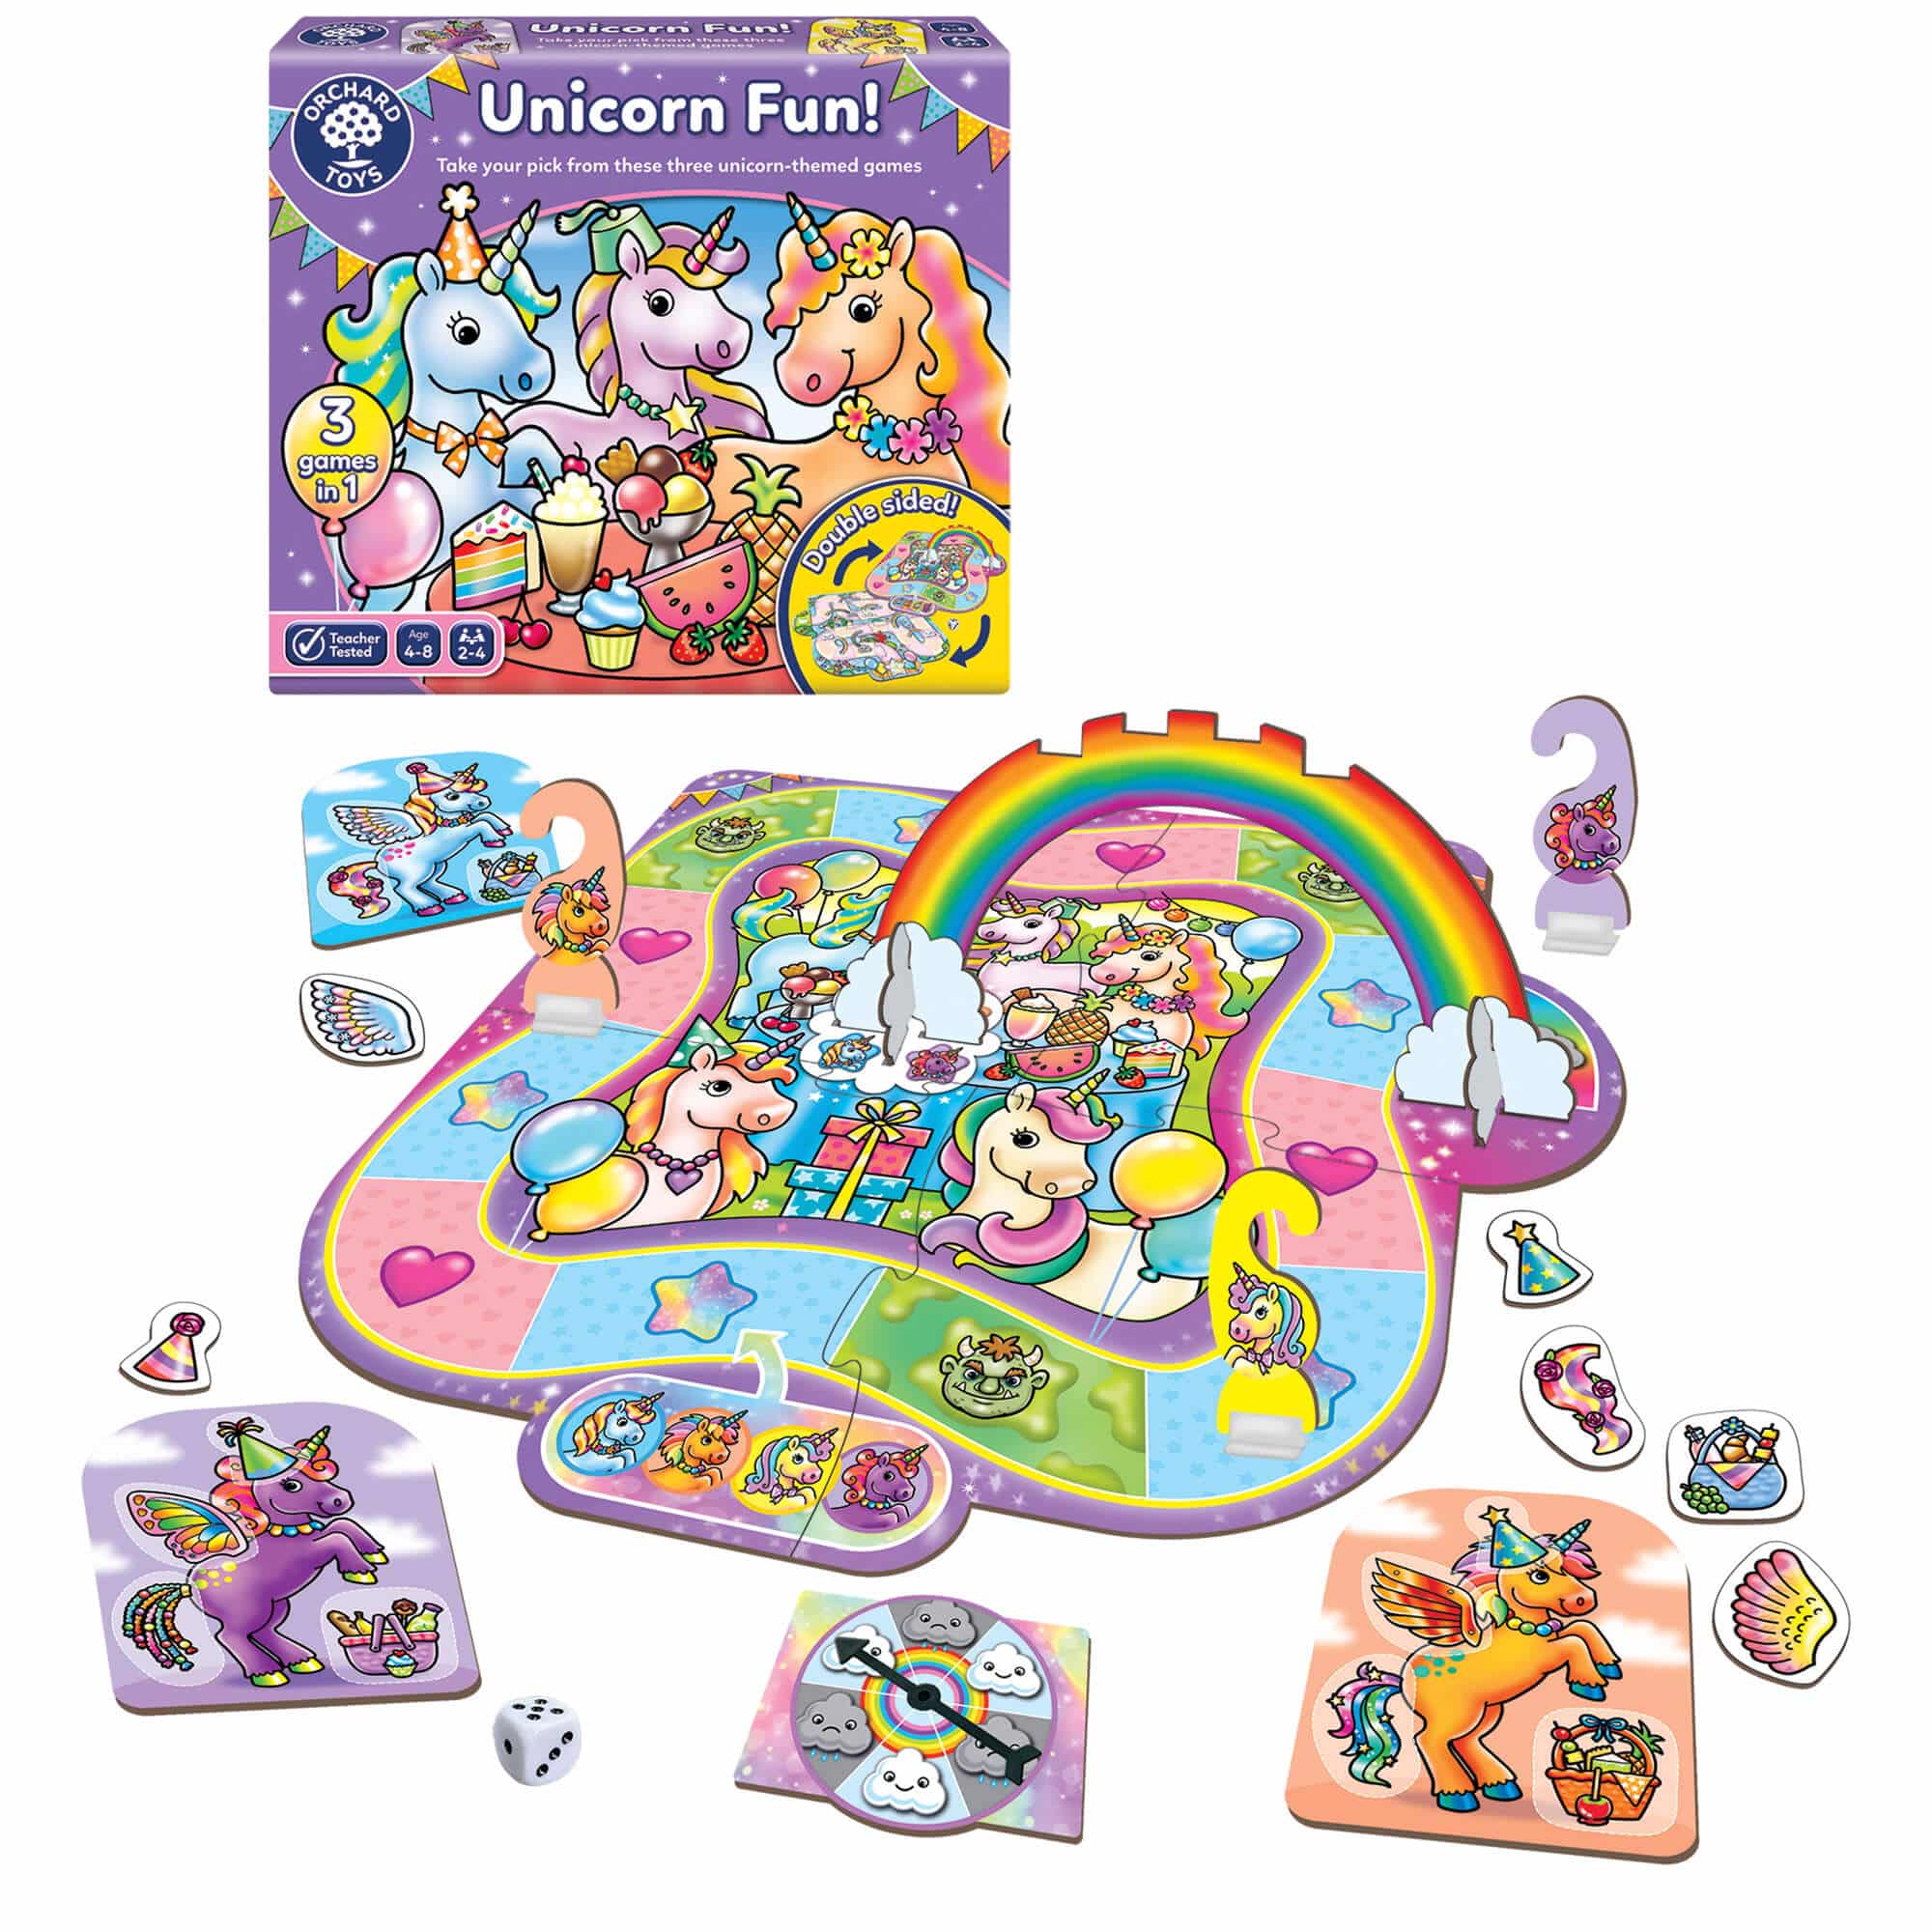 Unicorn Fun - Orchard